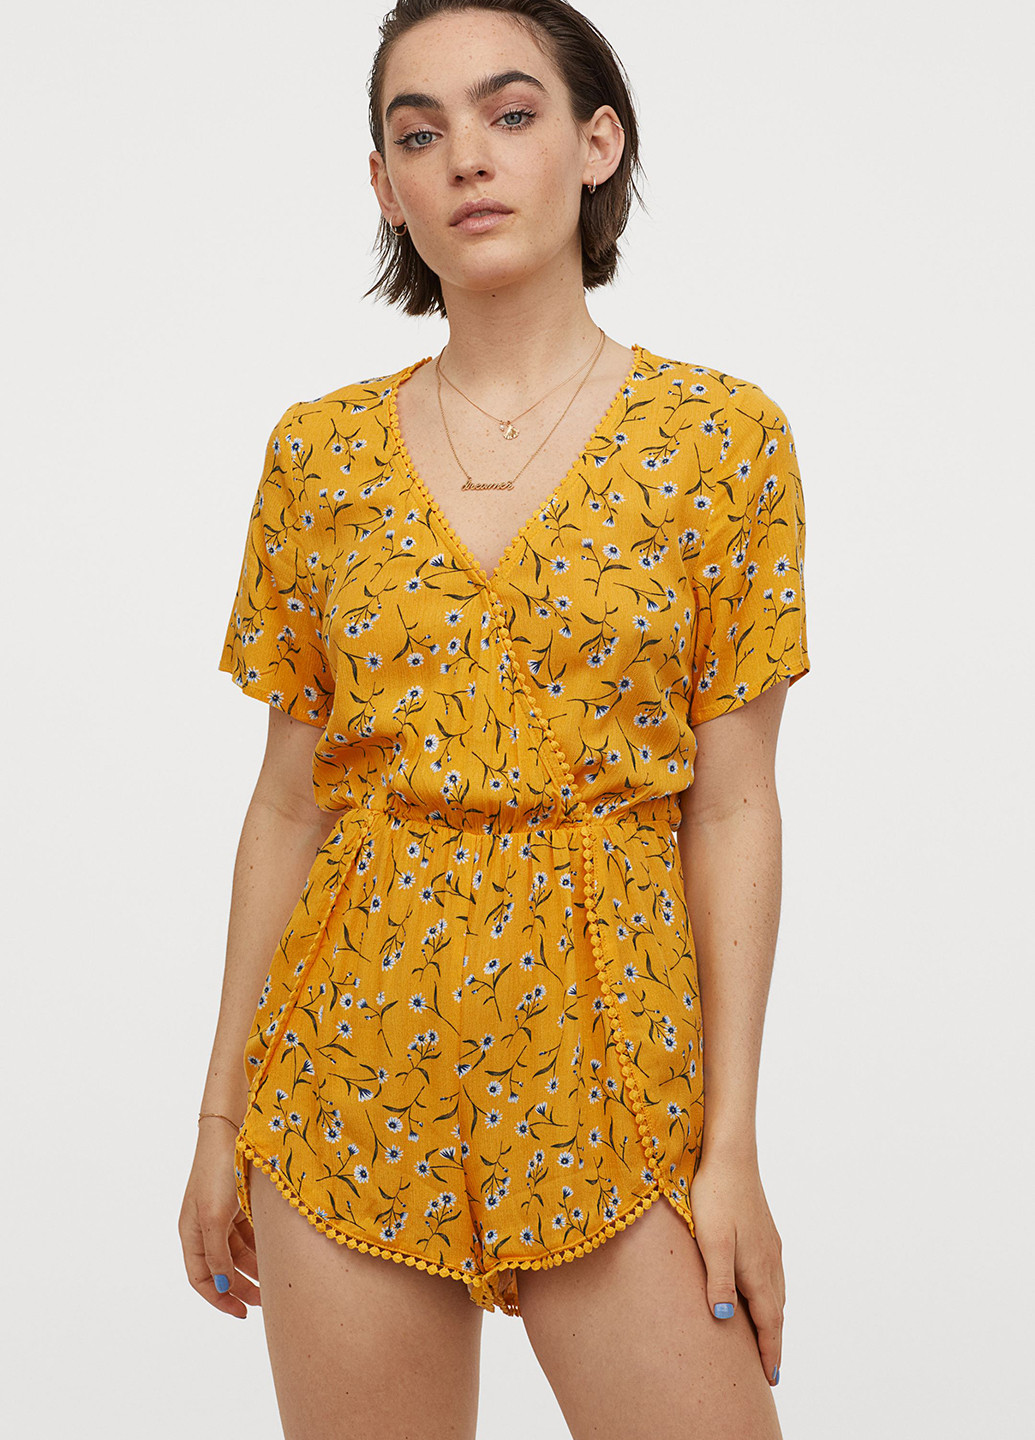 Комбинезон H&M комбинезон-шорты абстрактный жёлтый кэжуал вискоза